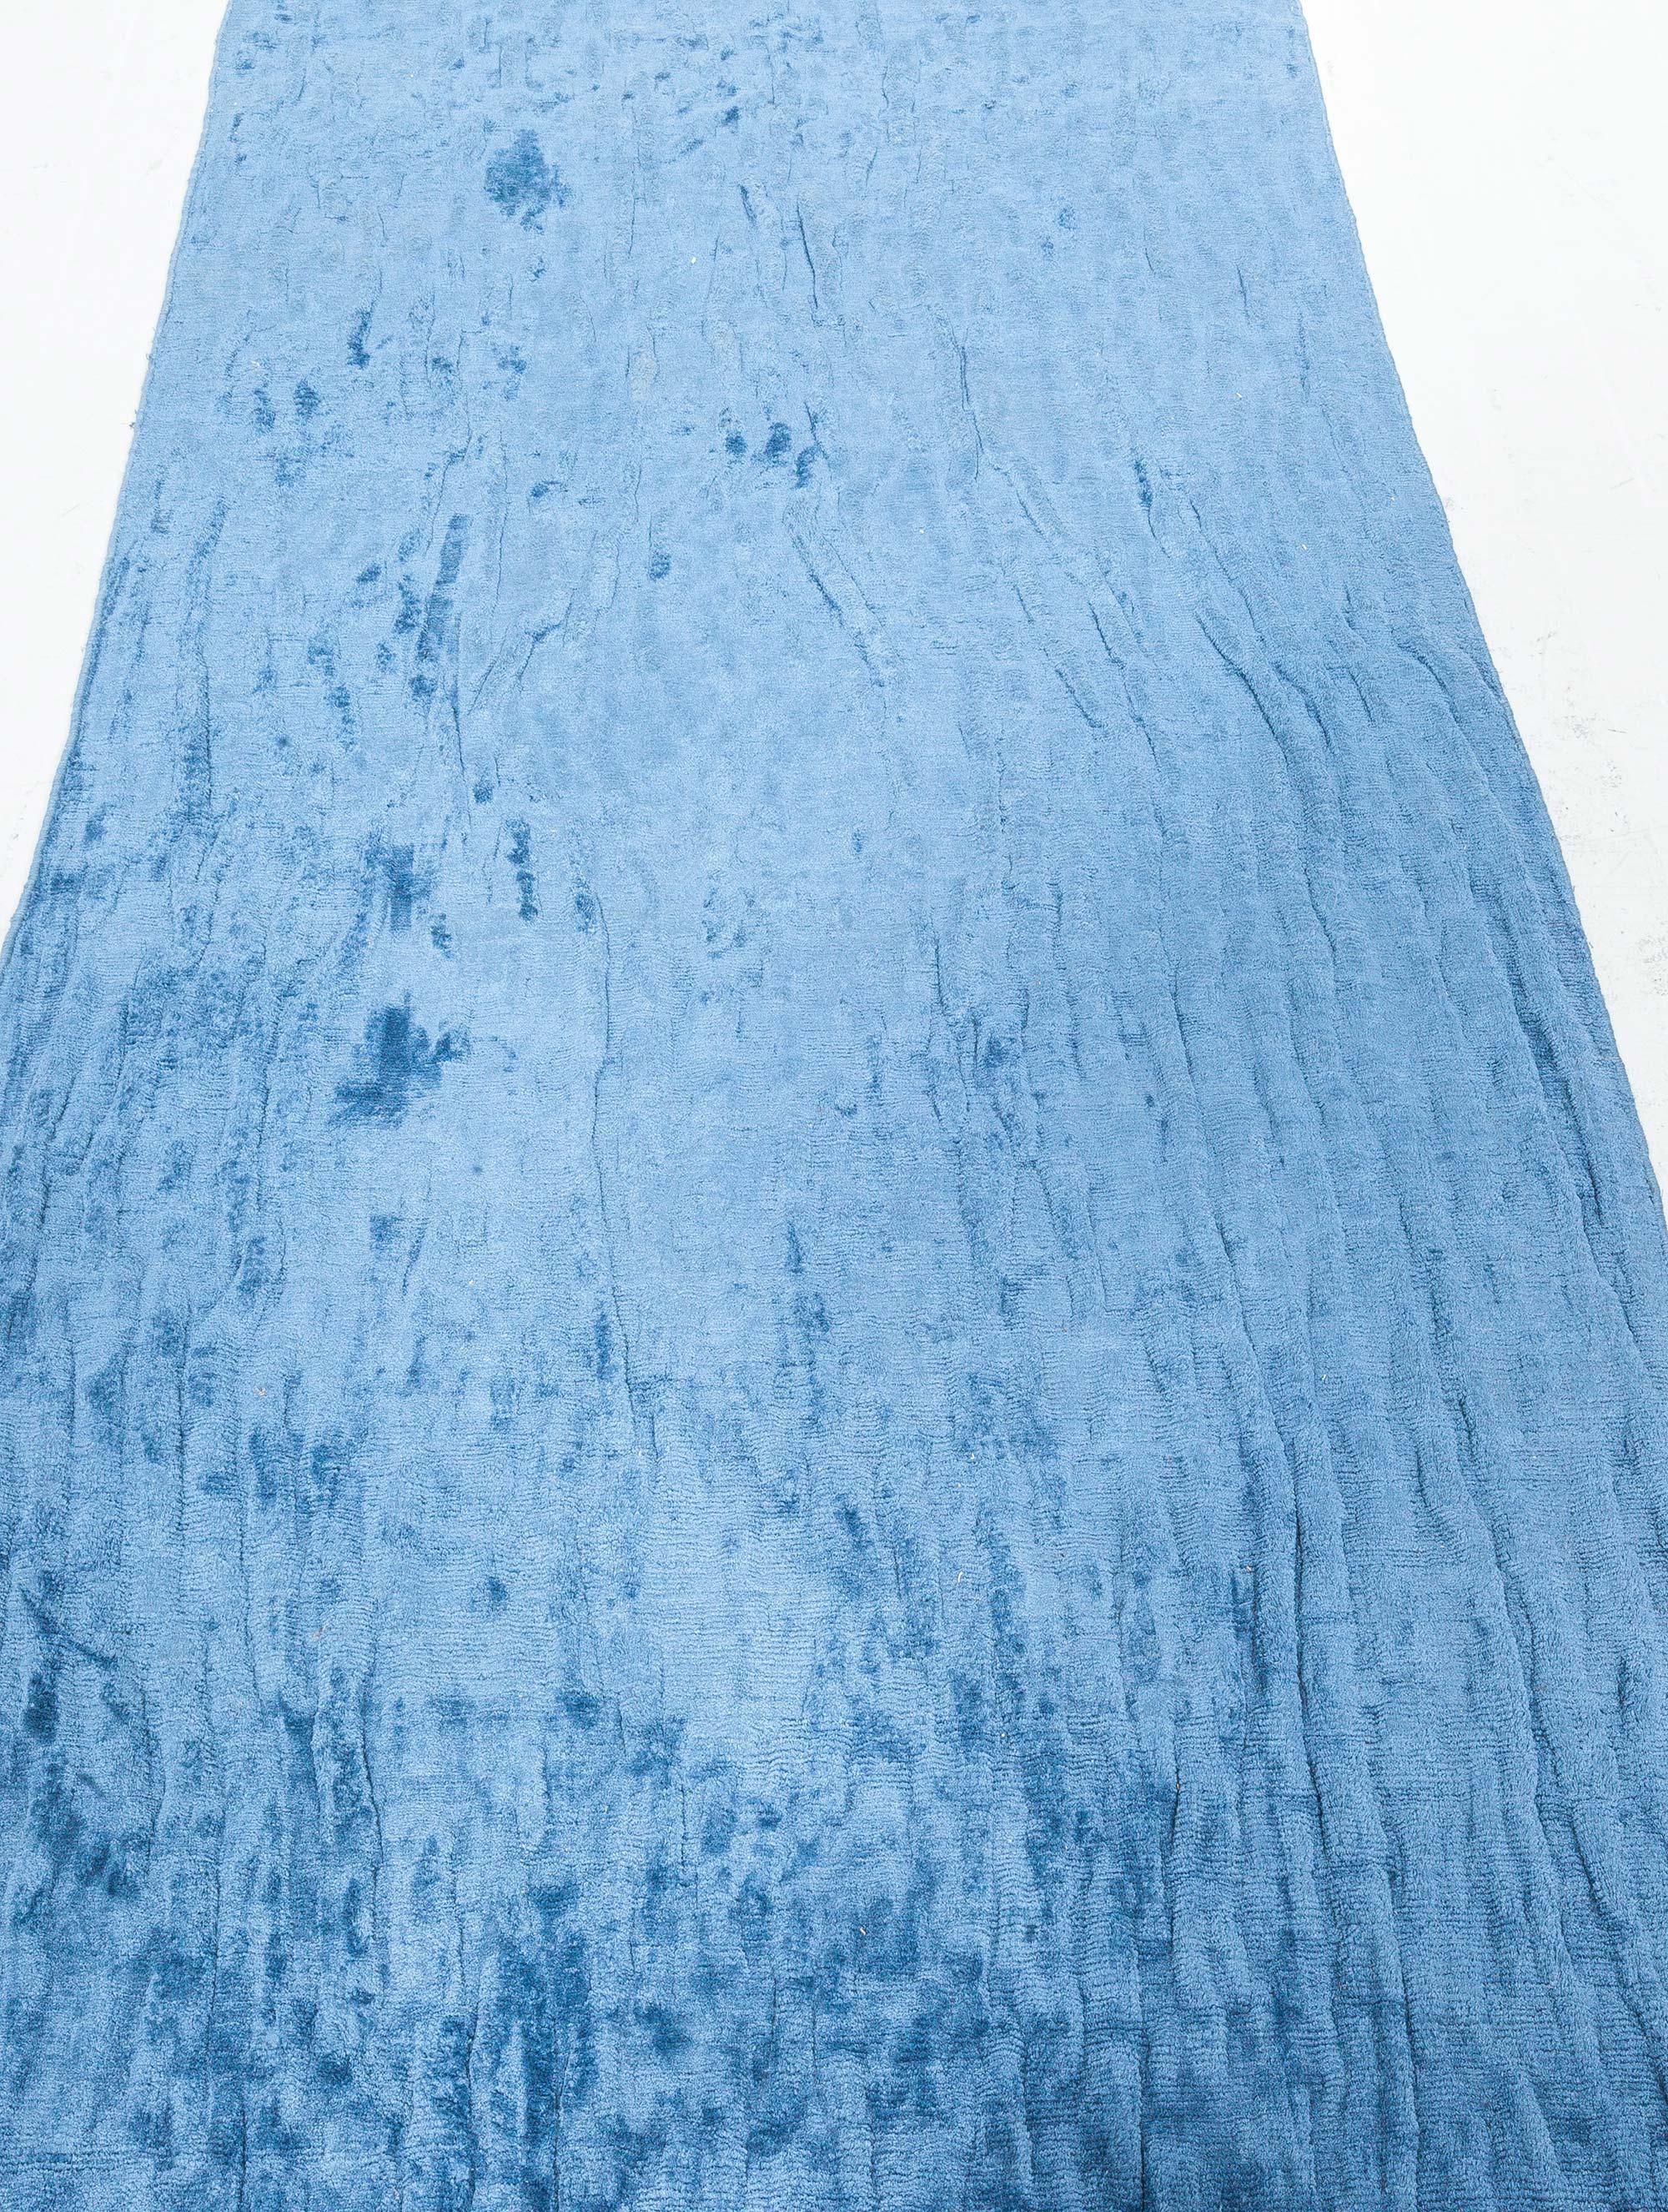 Chemin de table contemporain en soie bleue
Taille : 3'3